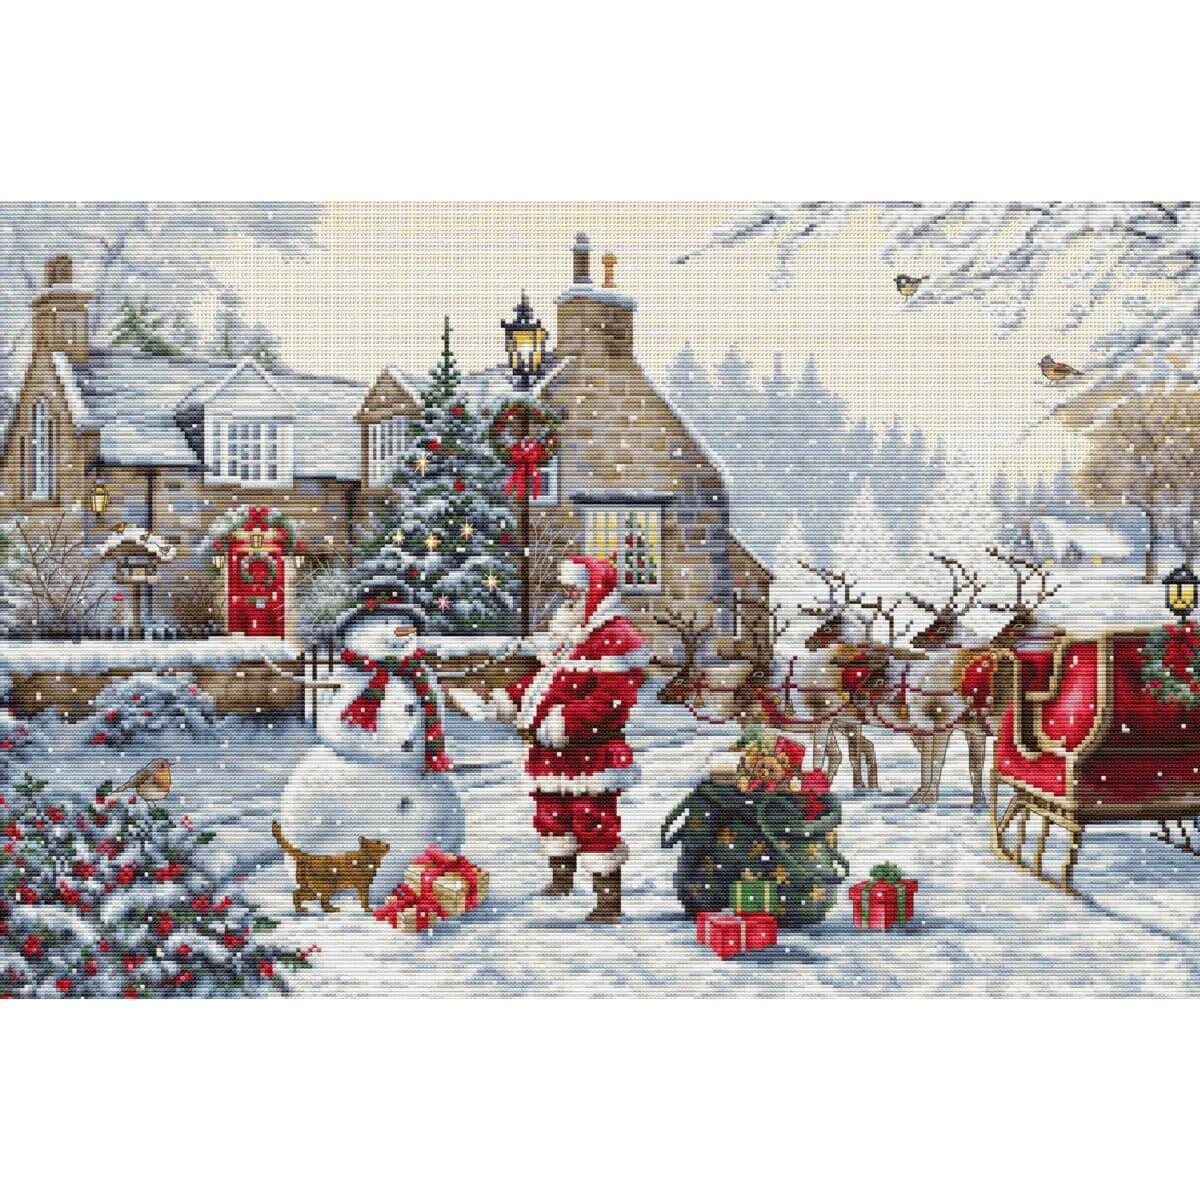 Un paysage hivernal festif avec le Père Noël,...